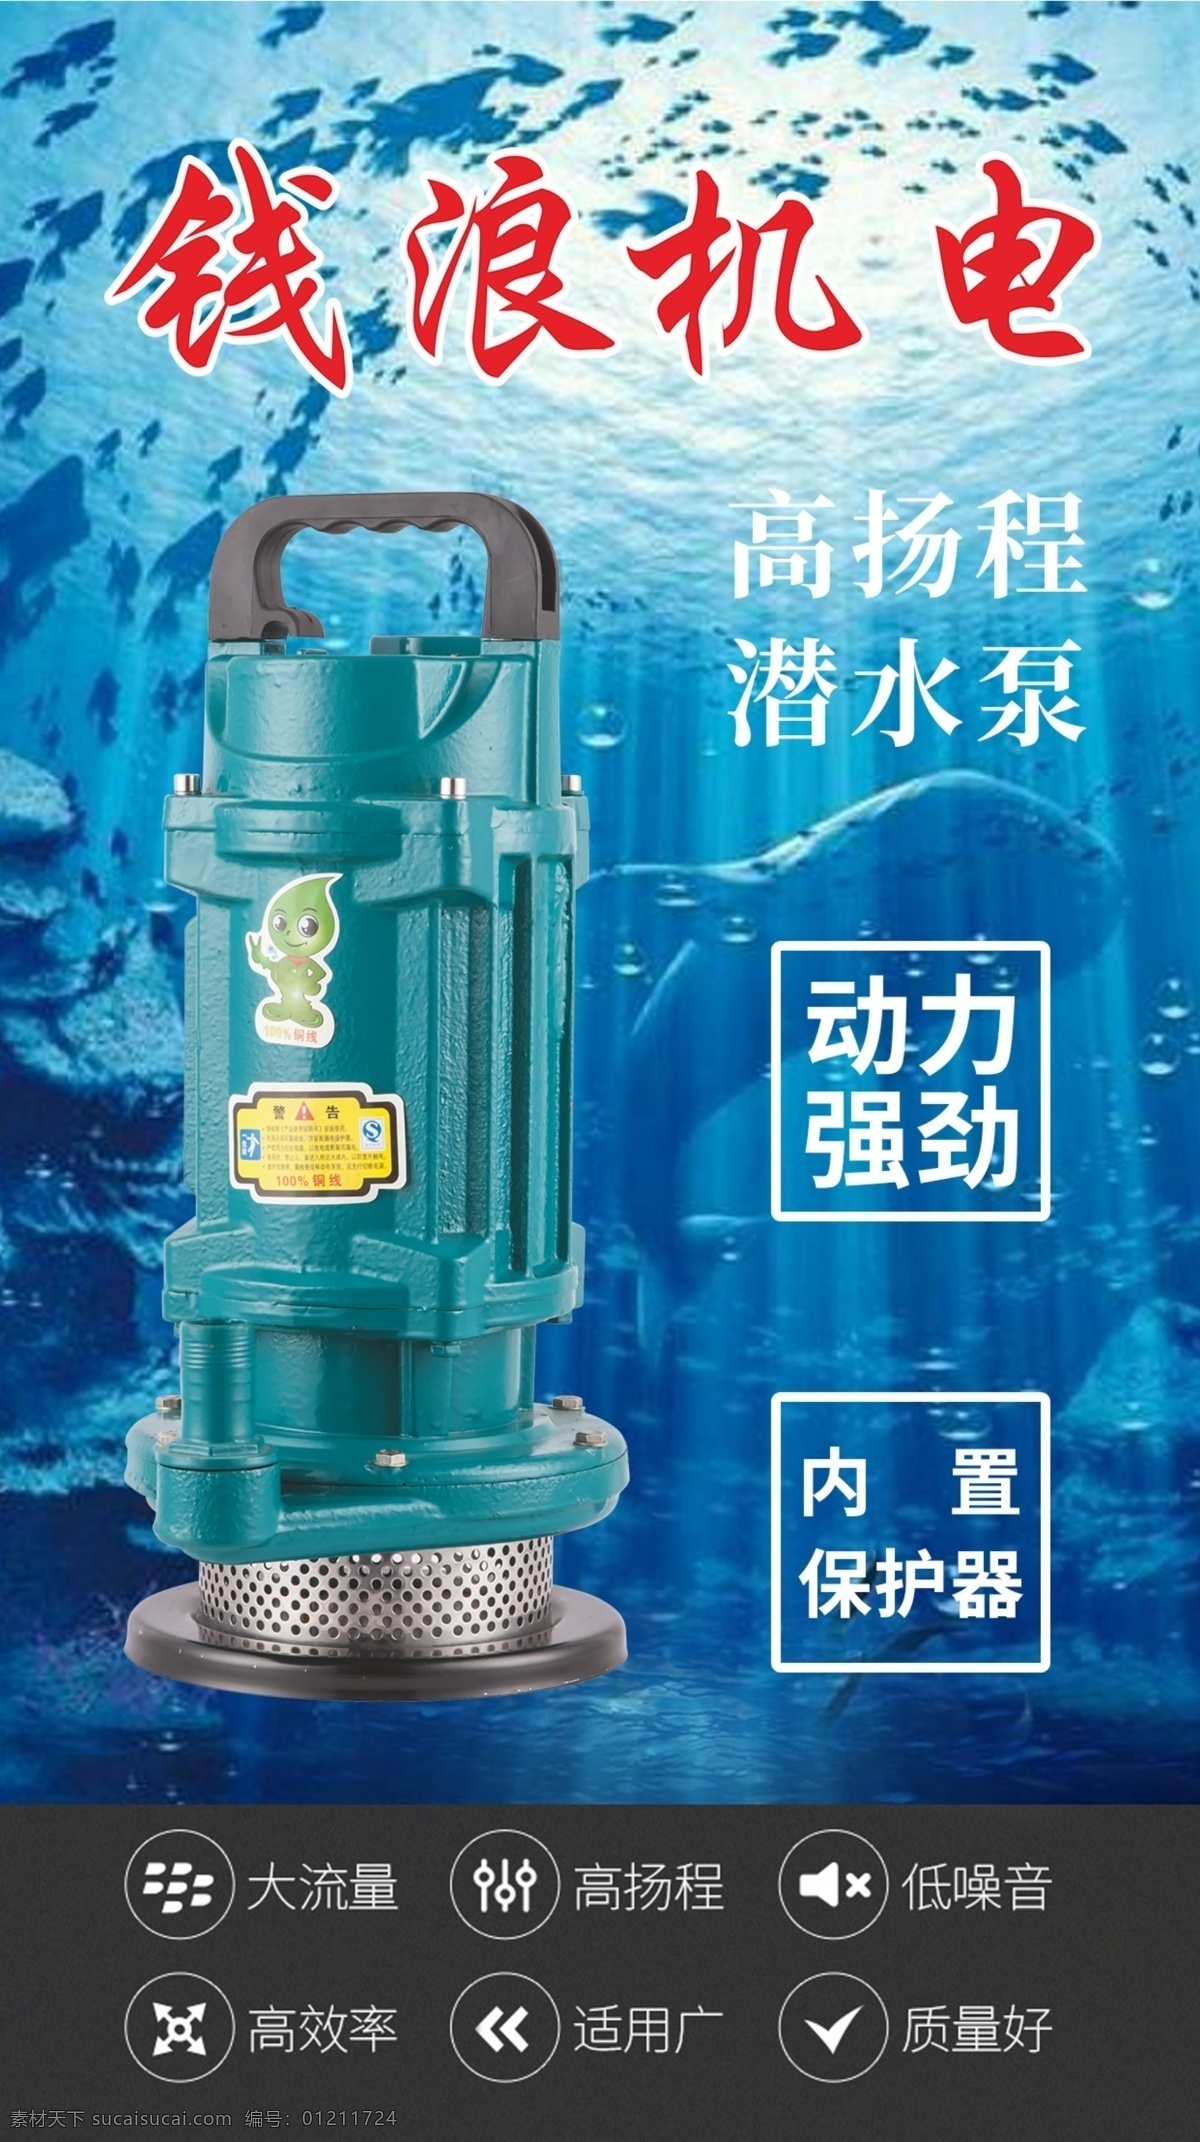 水泵机电海报 水泵 电机 海报 微信群 朋友圈 污水泵 潜水泵